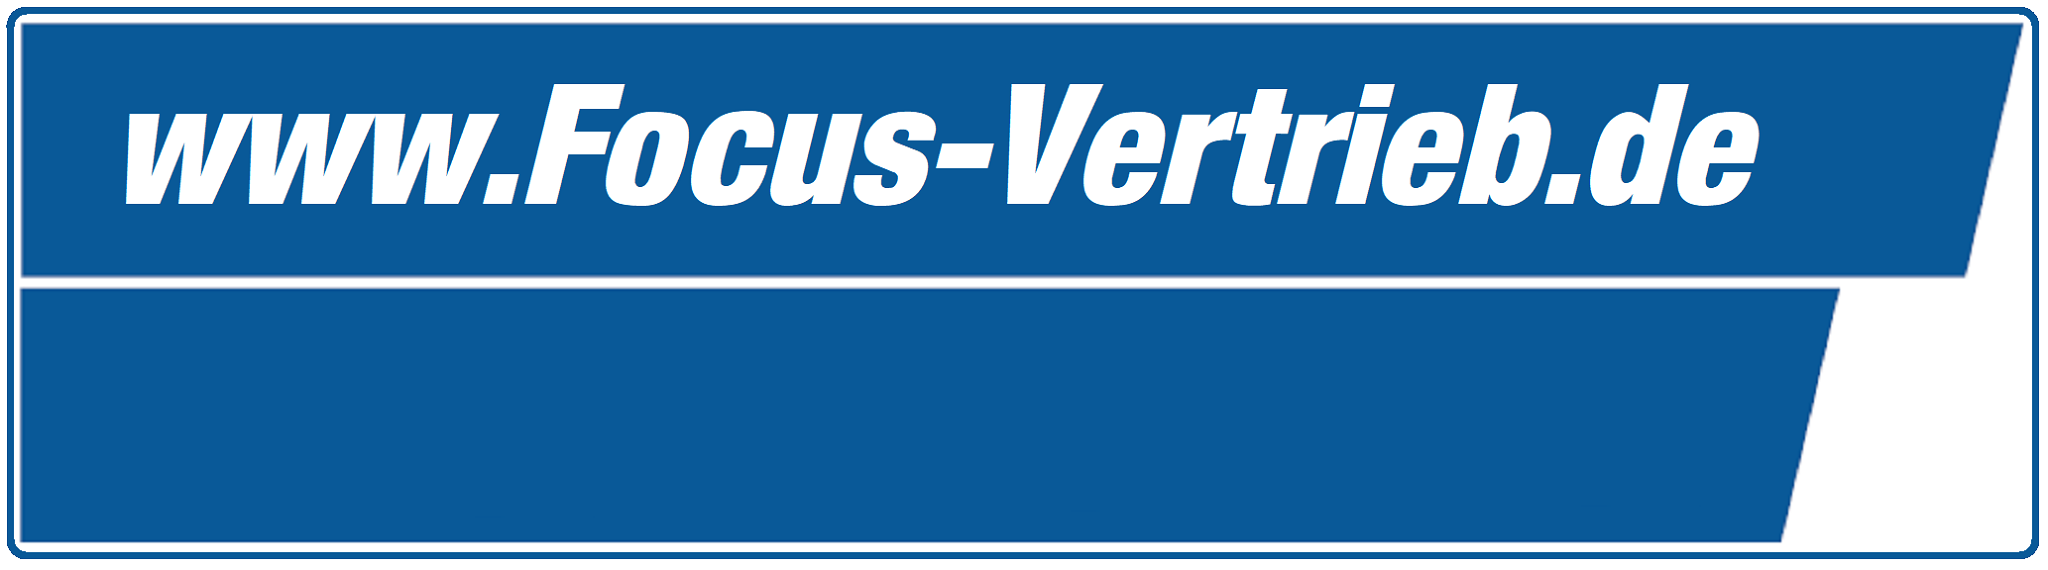 www.Focus-Vertrieb.de